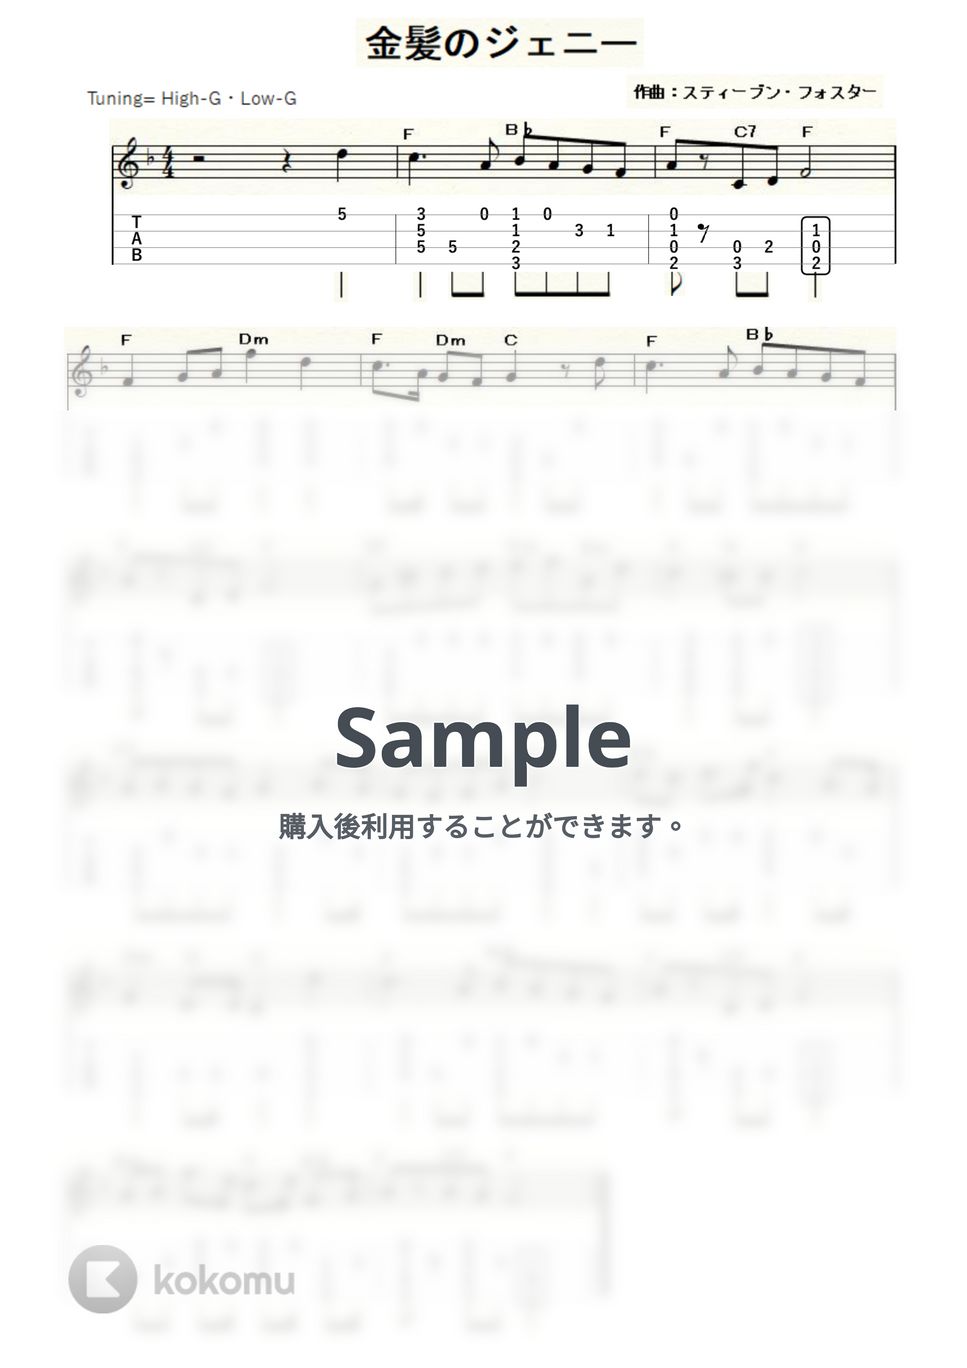 フォスター - 金髪のジェニー (ｳｸﾚﾚｿﾛ / High-G・Low-G / 初級～中級) by ukulelepapa